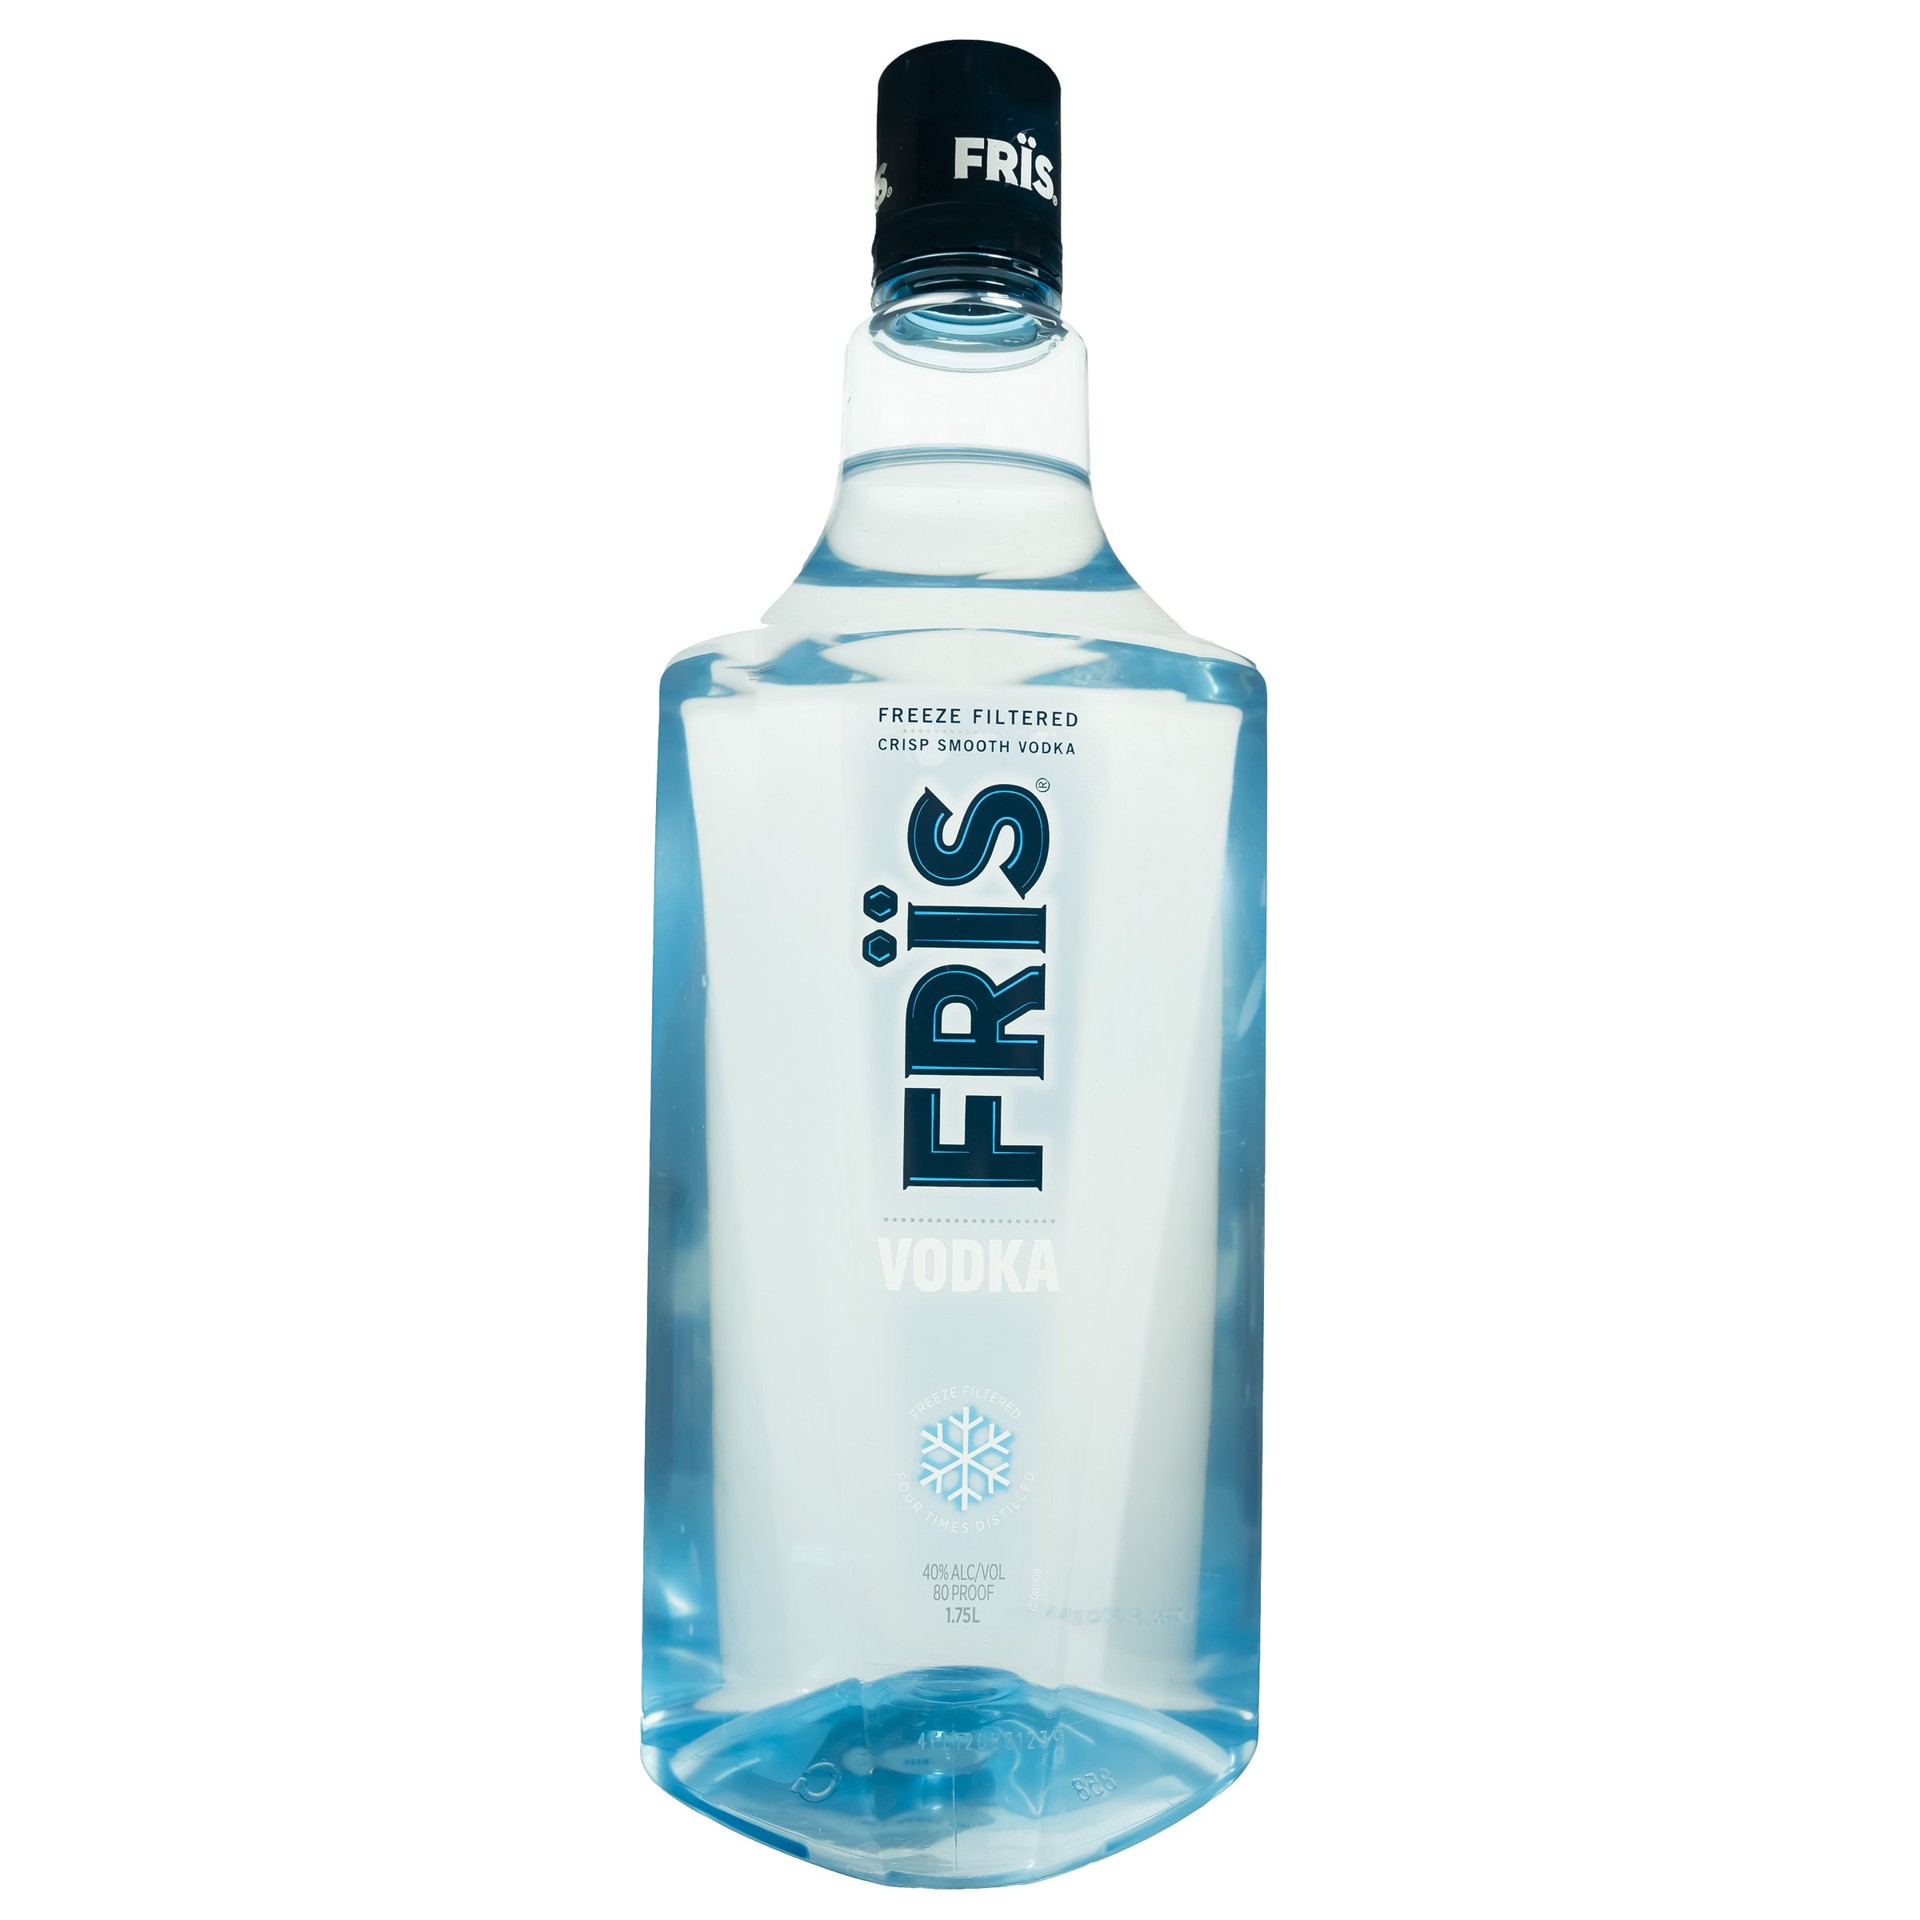 slide 1 of 5, Fris FRÏS Vodka, 1.75l 80 Proof, 1.75 liter